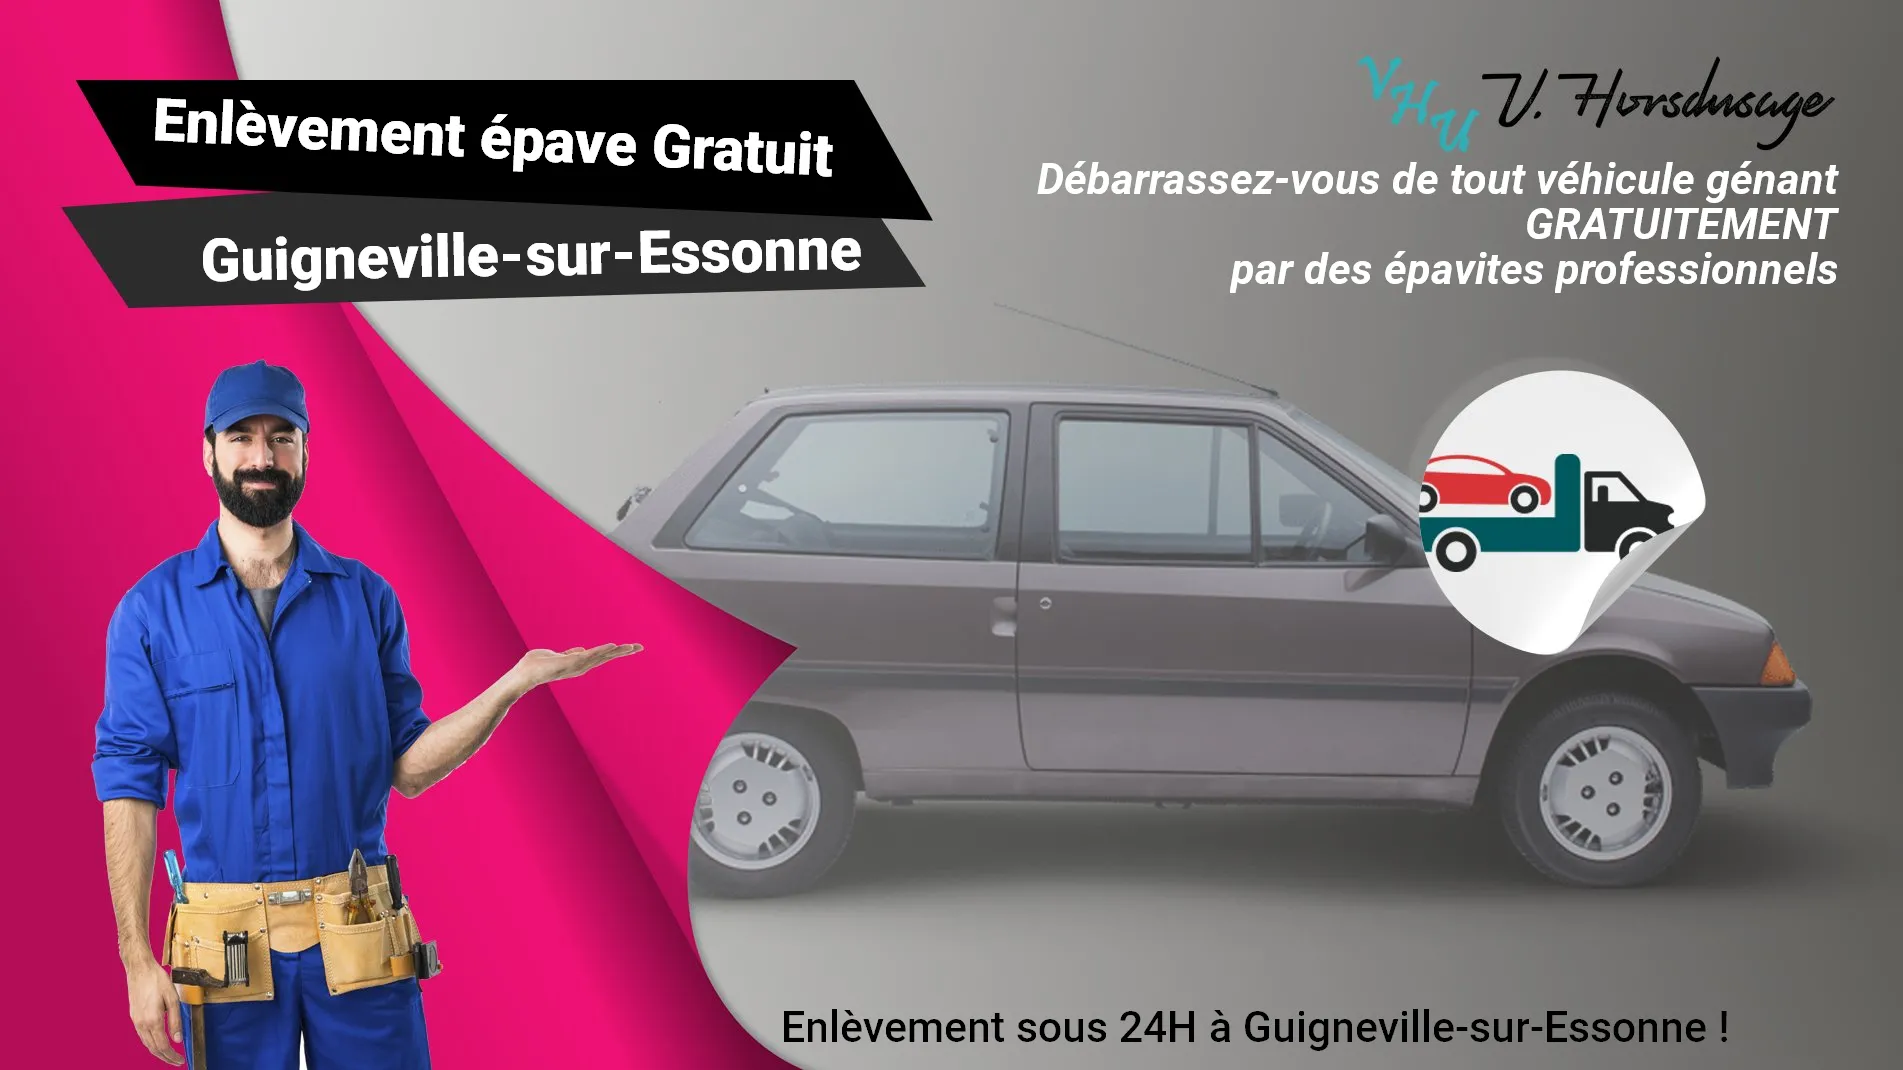 Pour un enlèvement gratuit à Guigneville-sur-Essonne, contactez nos épavistes agréé VHU